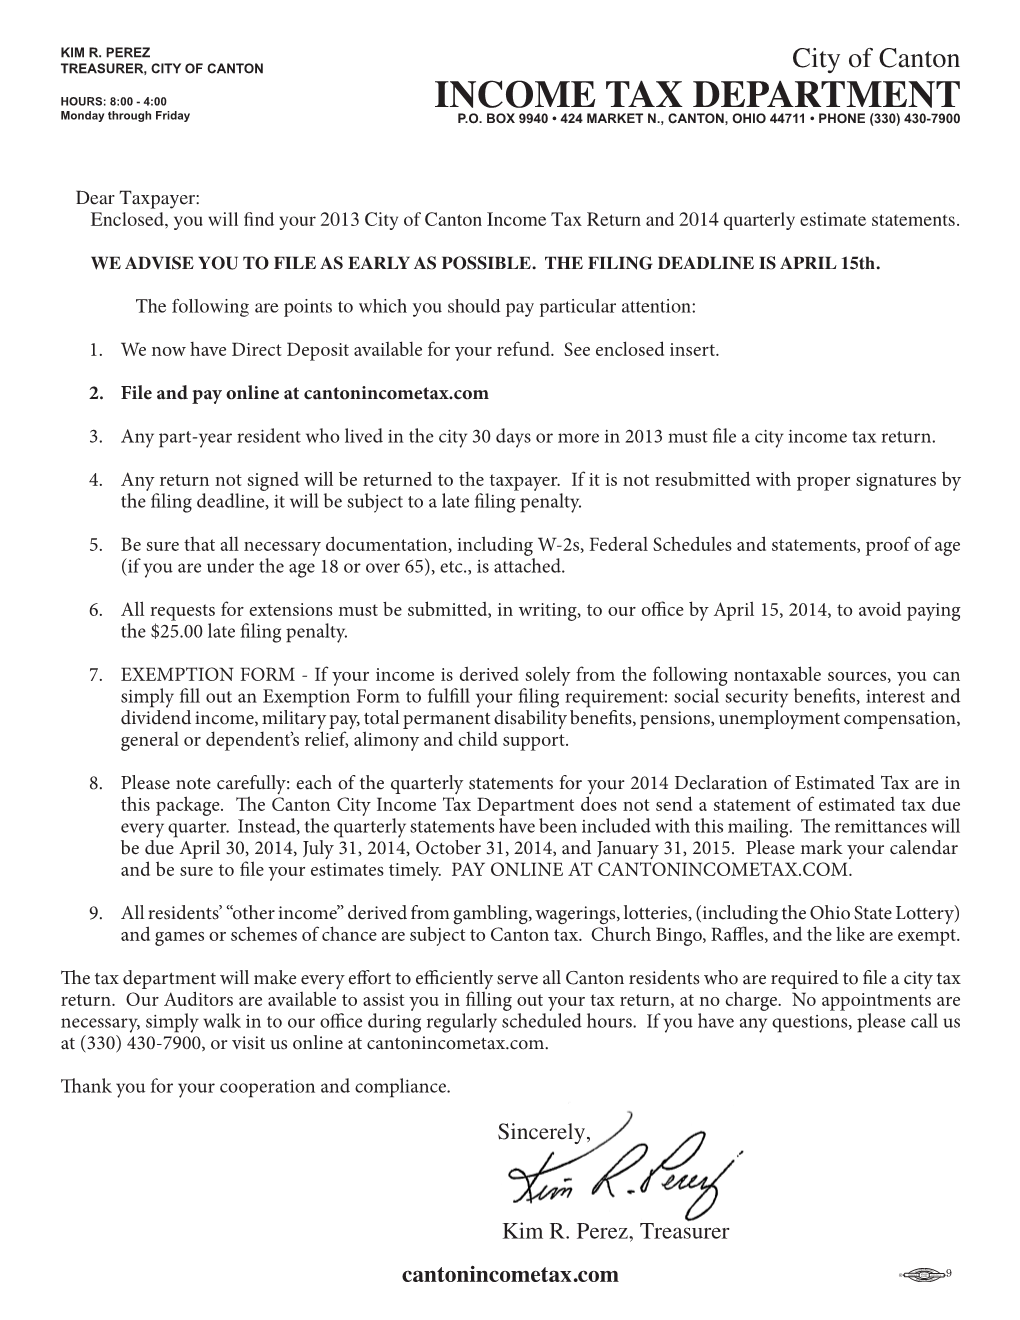 Letter from Treasurer & General Info (PDF)